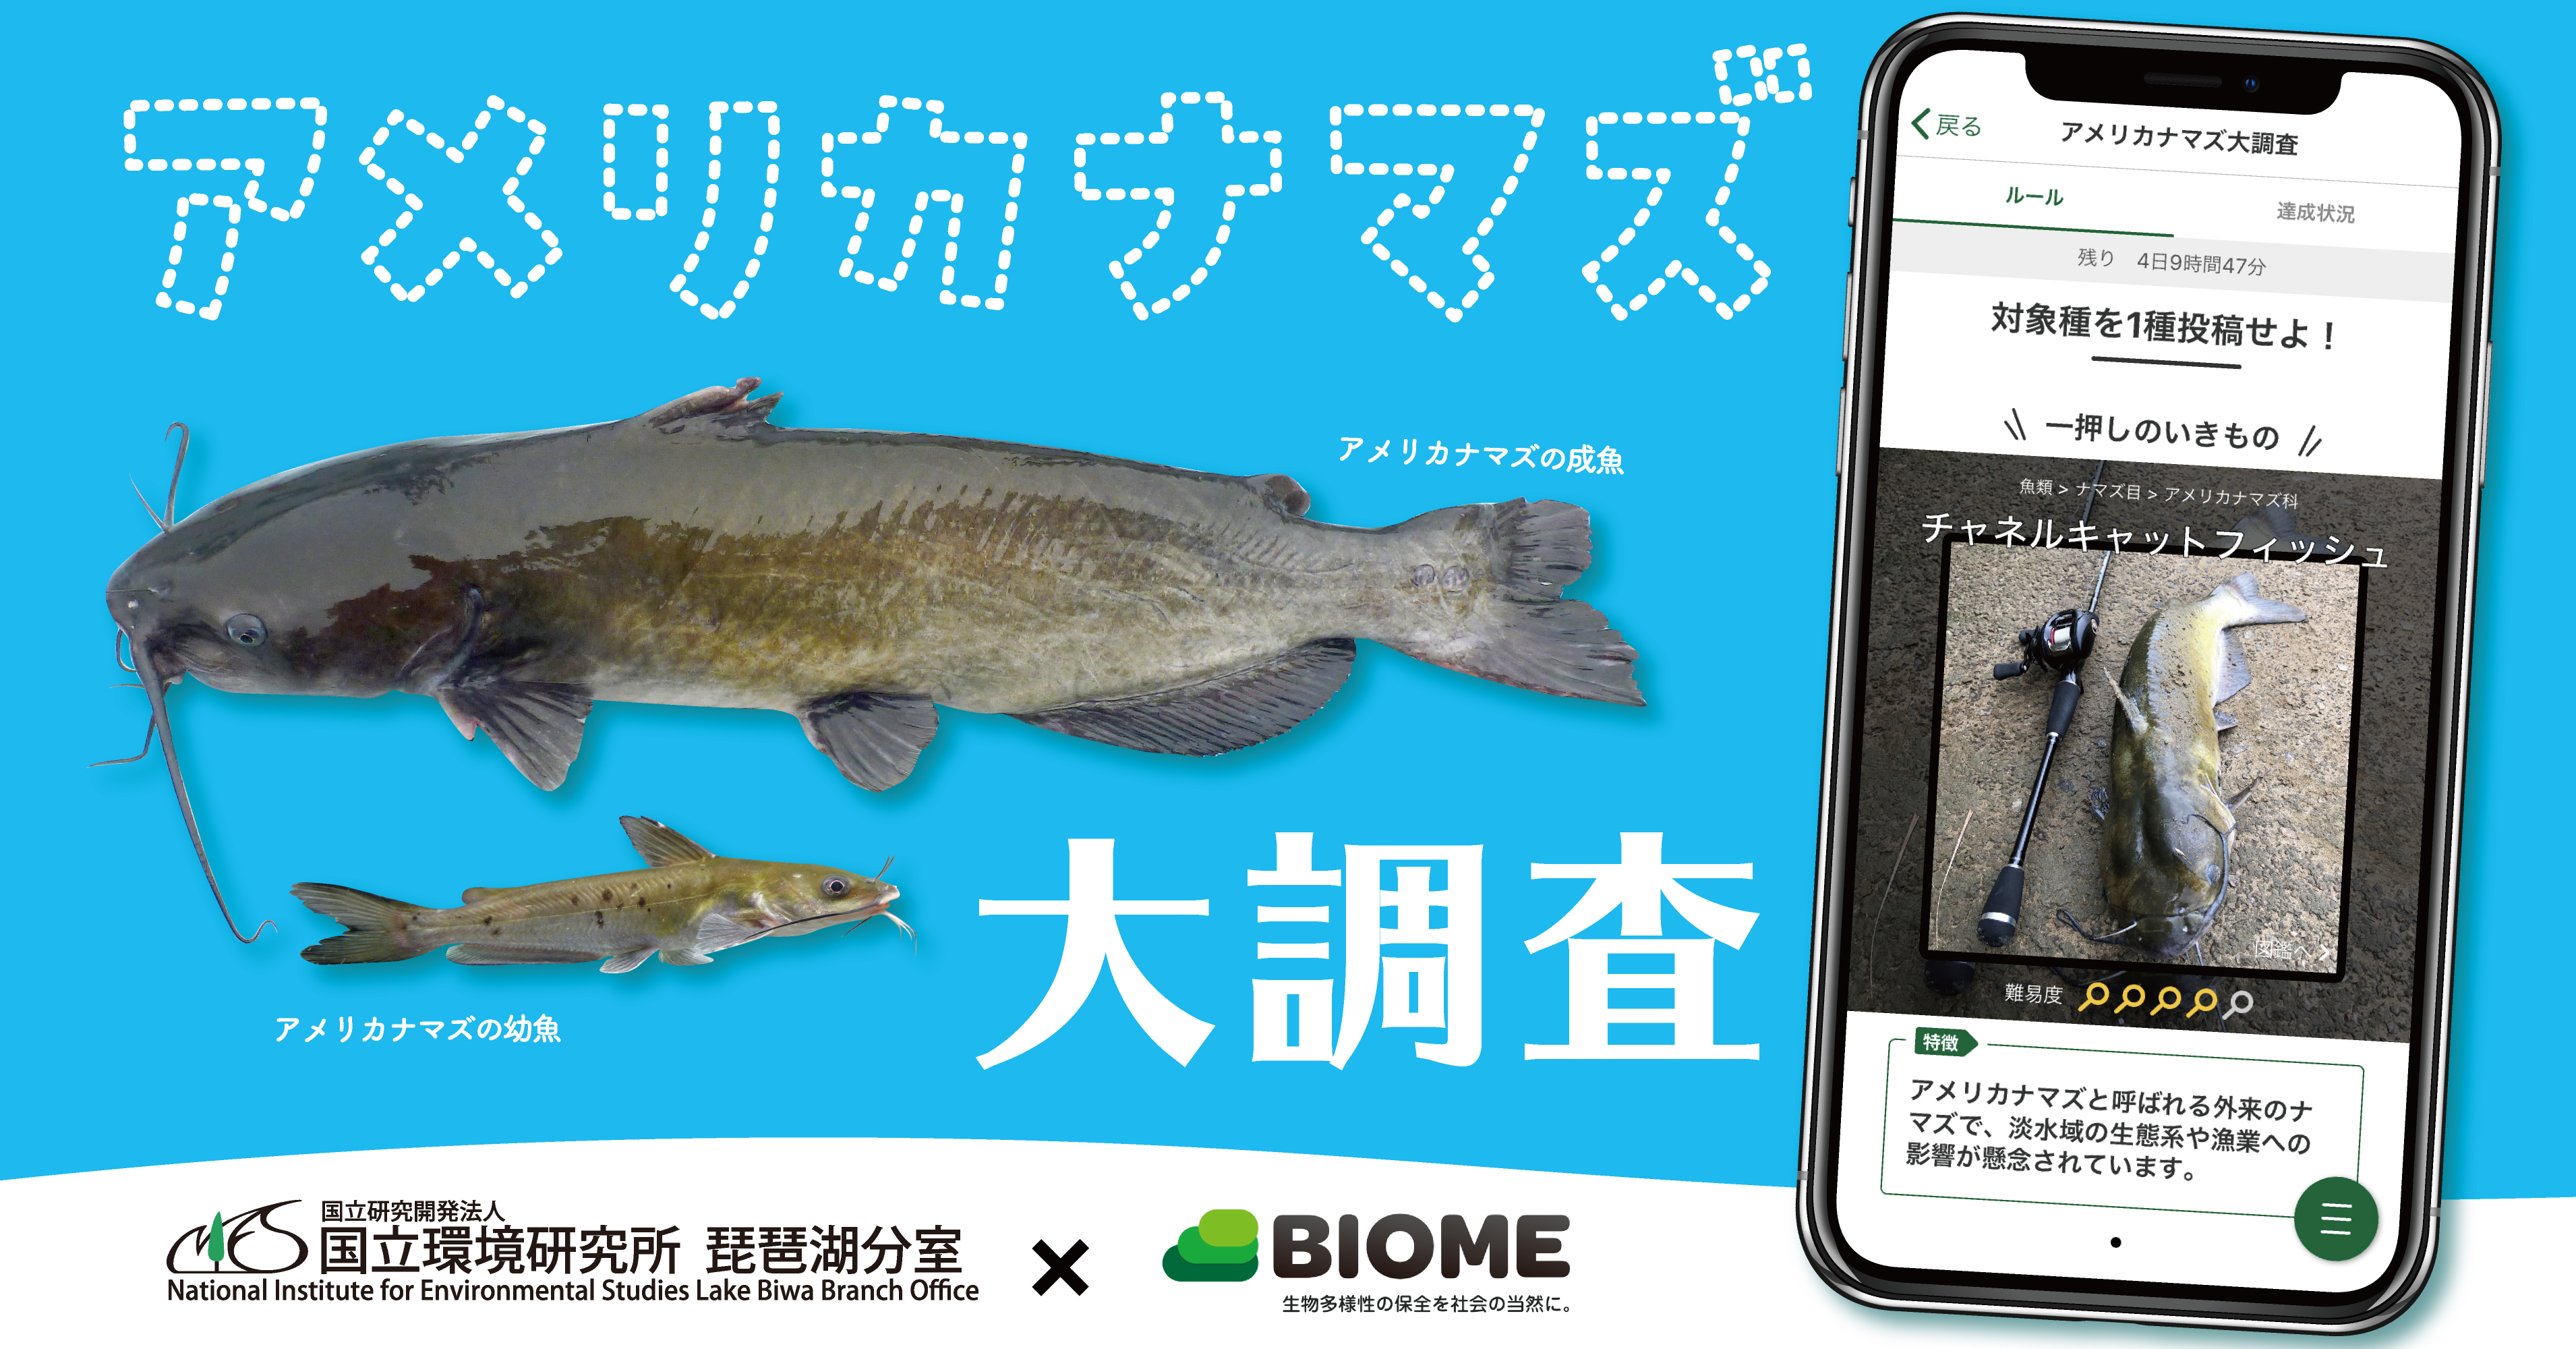 国立環境研究所 Biome スマホアプリを用いた外来魚 アメリカナマズ の全国調査を実施 株 バイオームのプレスリリース